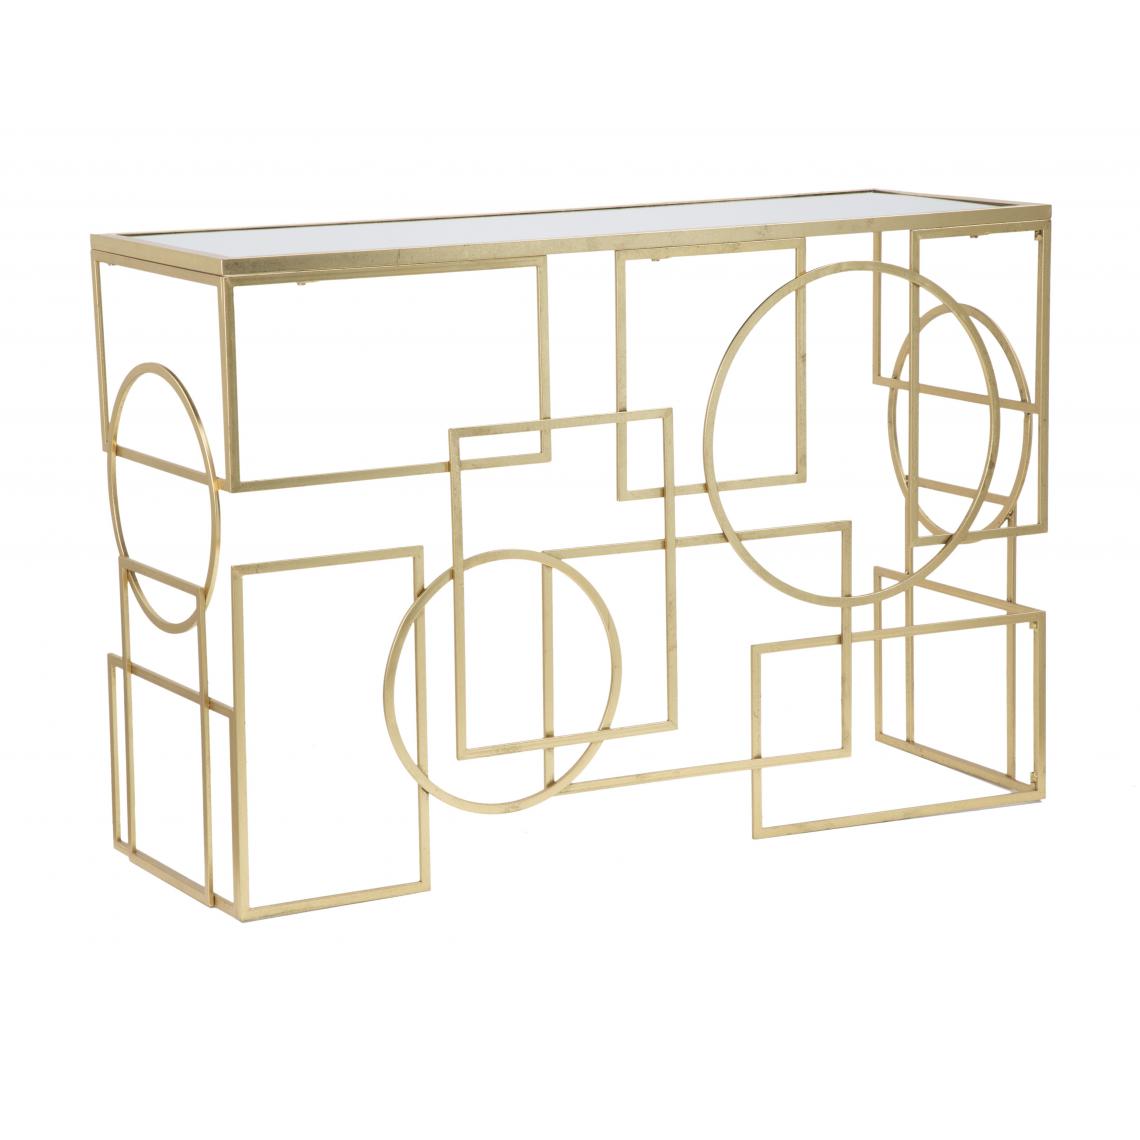 Alter - Console rectangulaire, en métal doré, avec plateau en verre miroir, couleur or, Mesure 41 x 81 x 120 cm - Tables à manger